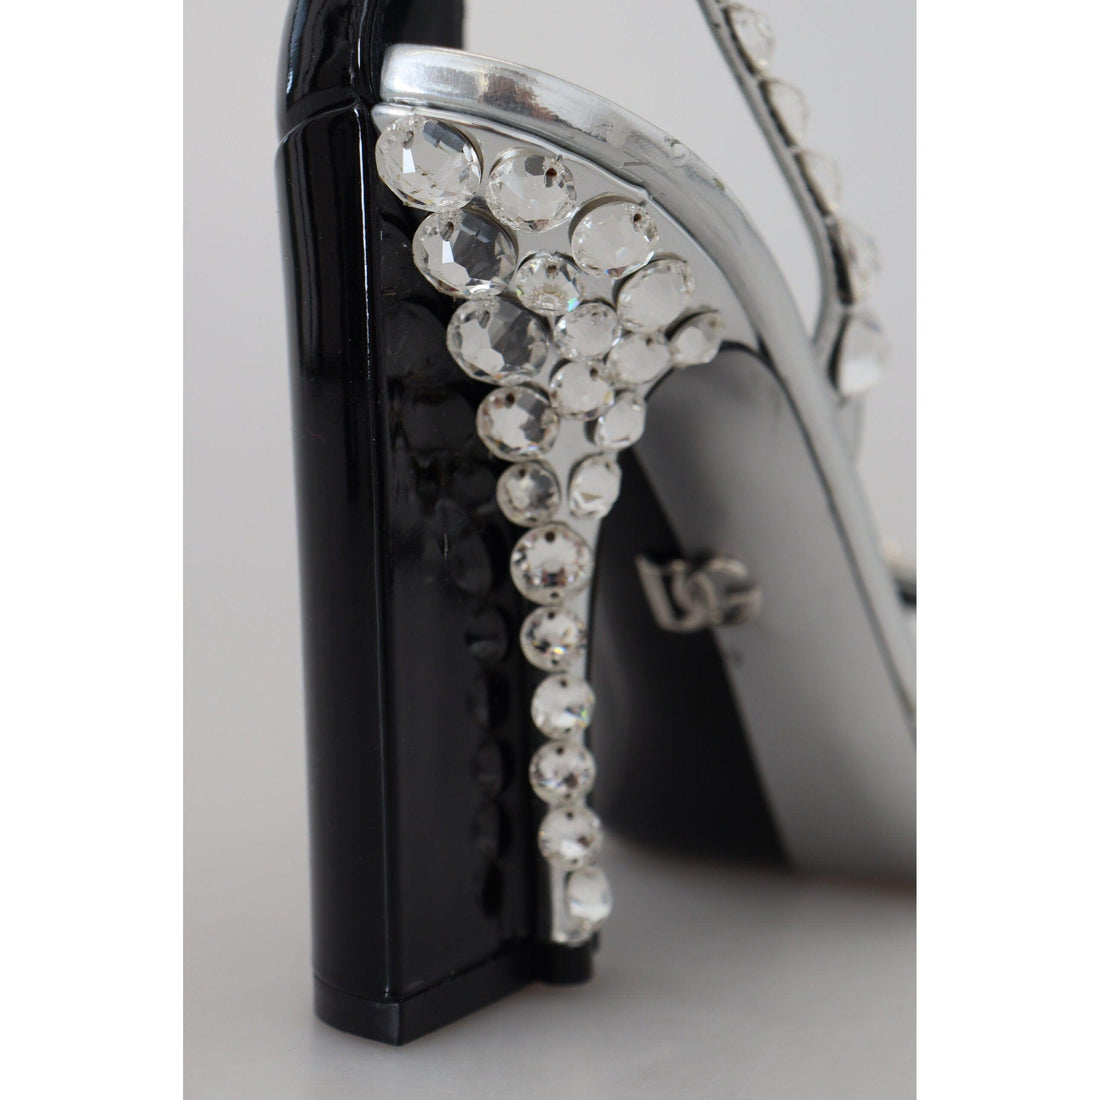 Dolce & Gabbana Elegant Crystals Embellished Leather Pumps